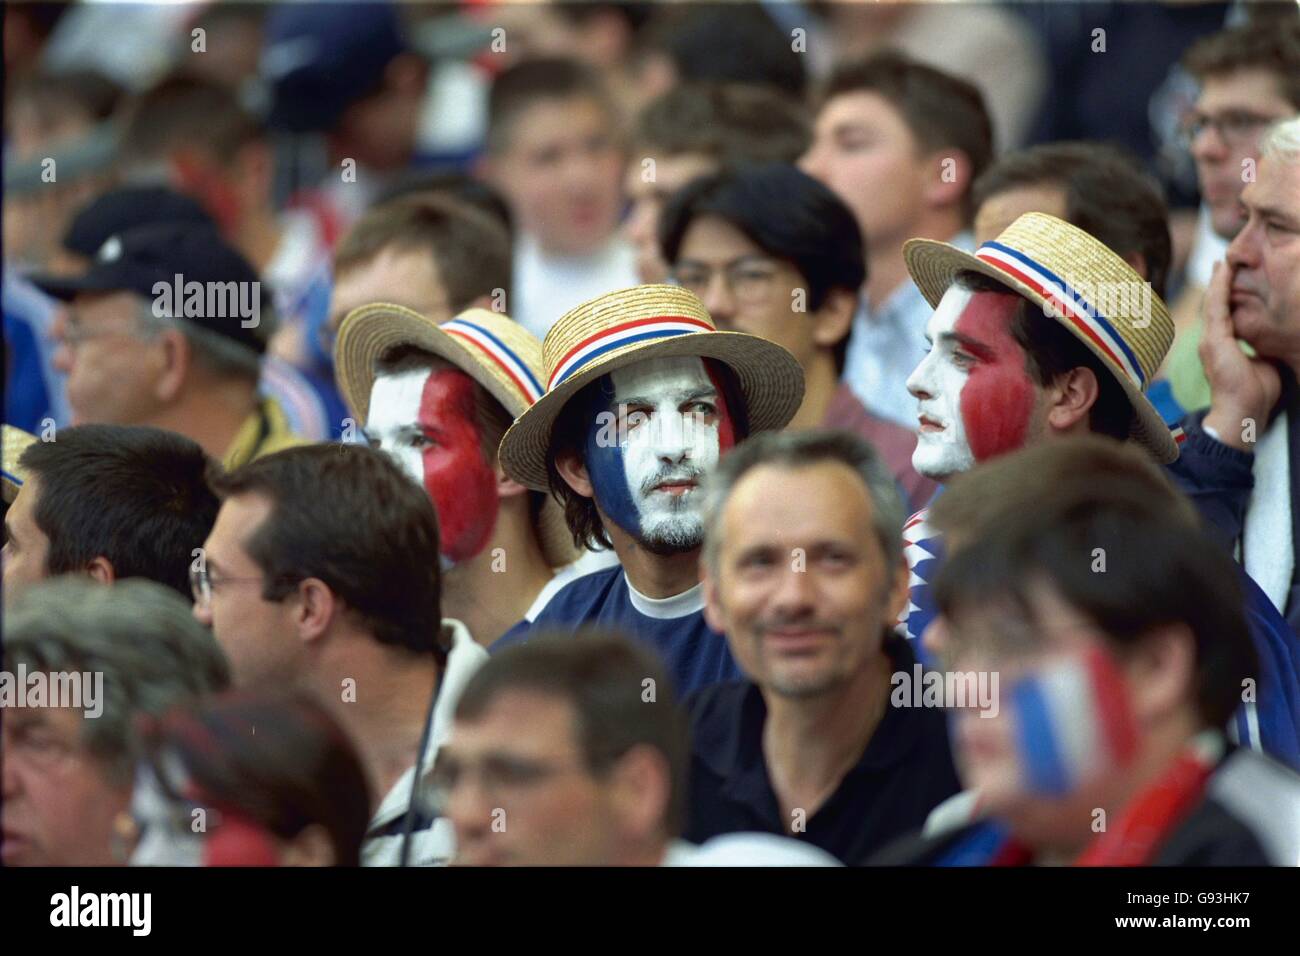 Fußball - Weltmeisterschaft Frankreich 98 - Gruppe C - Frankreich gegen Saudi-Arabien. Frankreich Fans in Strohboatern Stockfoto